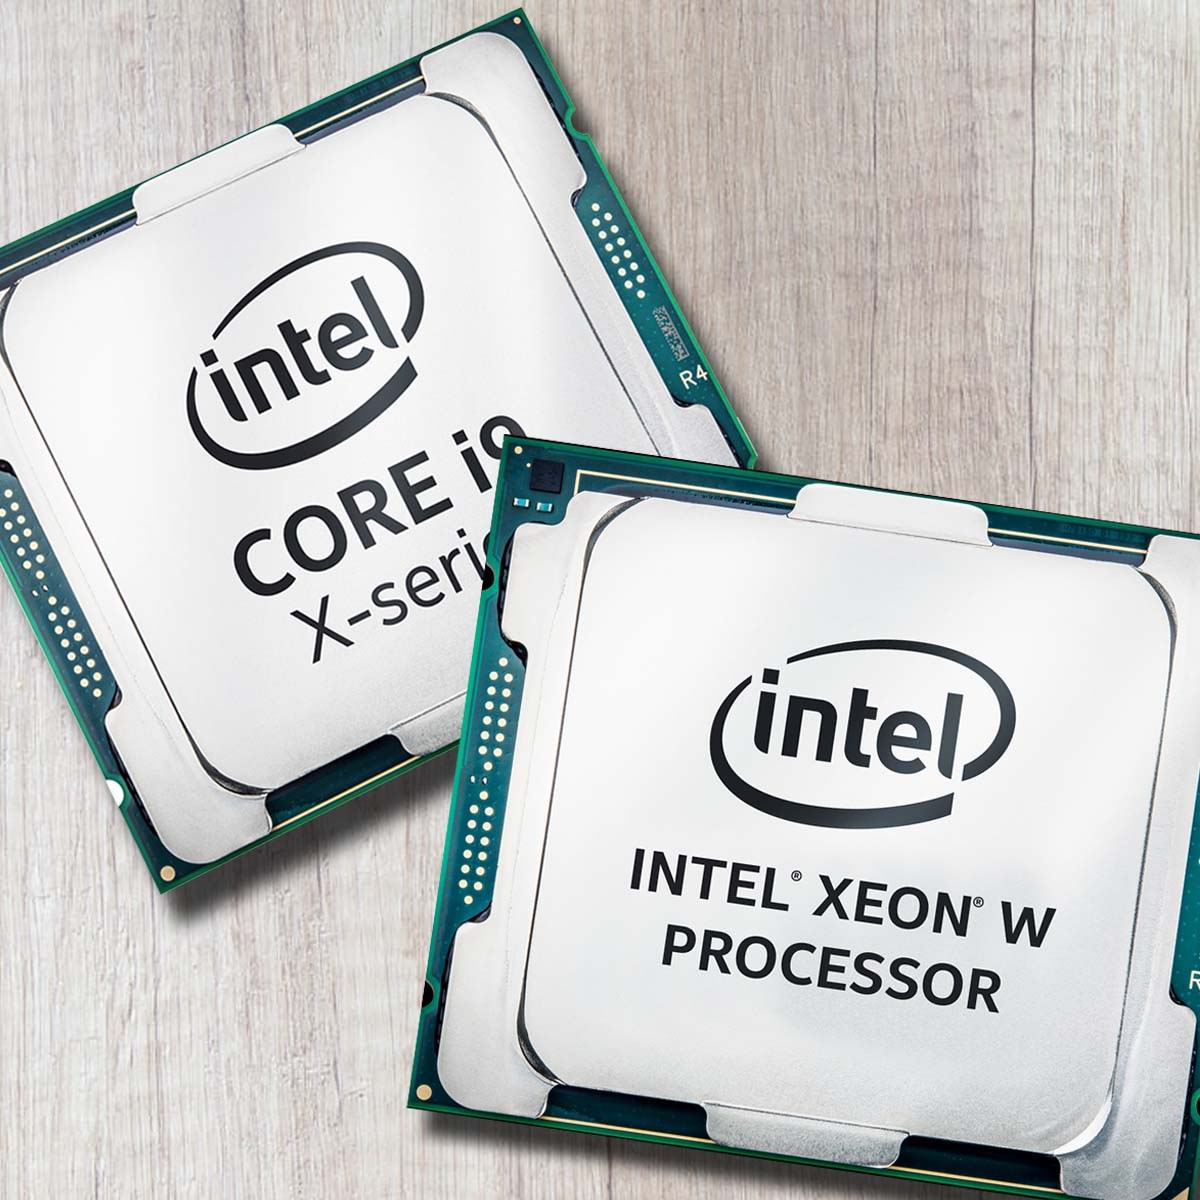 Интел коре i9 цена. Интел ксеон. Intel Xeon e-2276g OEM. Интел Xeon i. Интел коре i7.